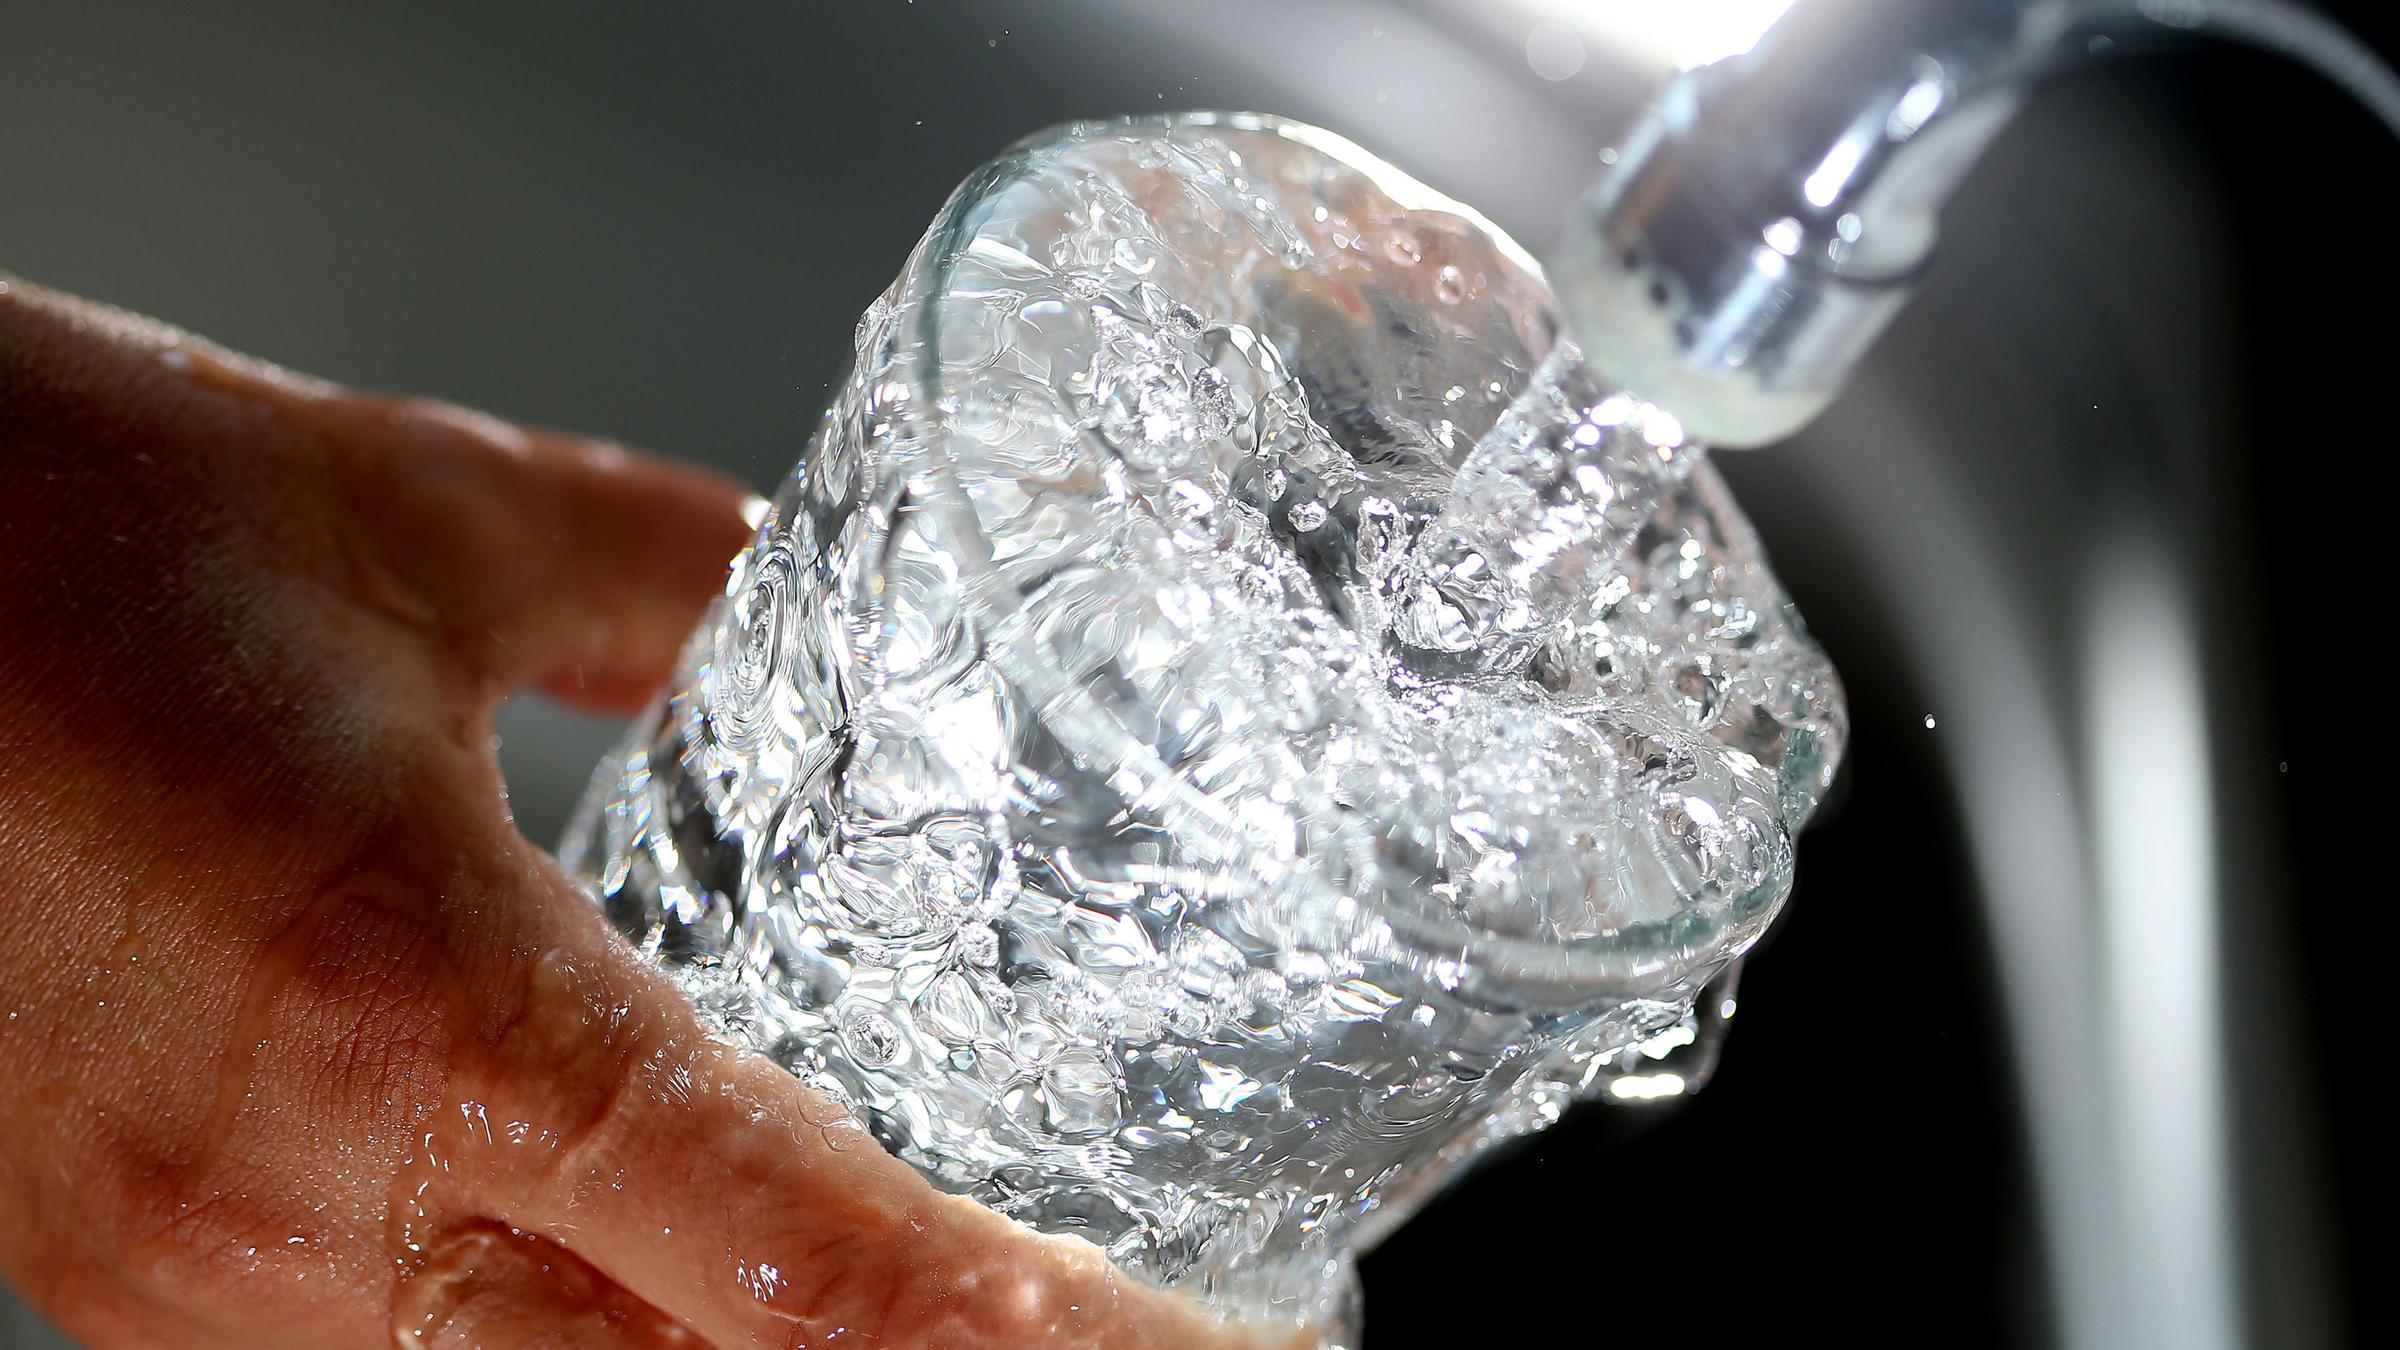 Fünf Tipps für gutes Leitungswasser: So bleibt es gesund - ZDFheute